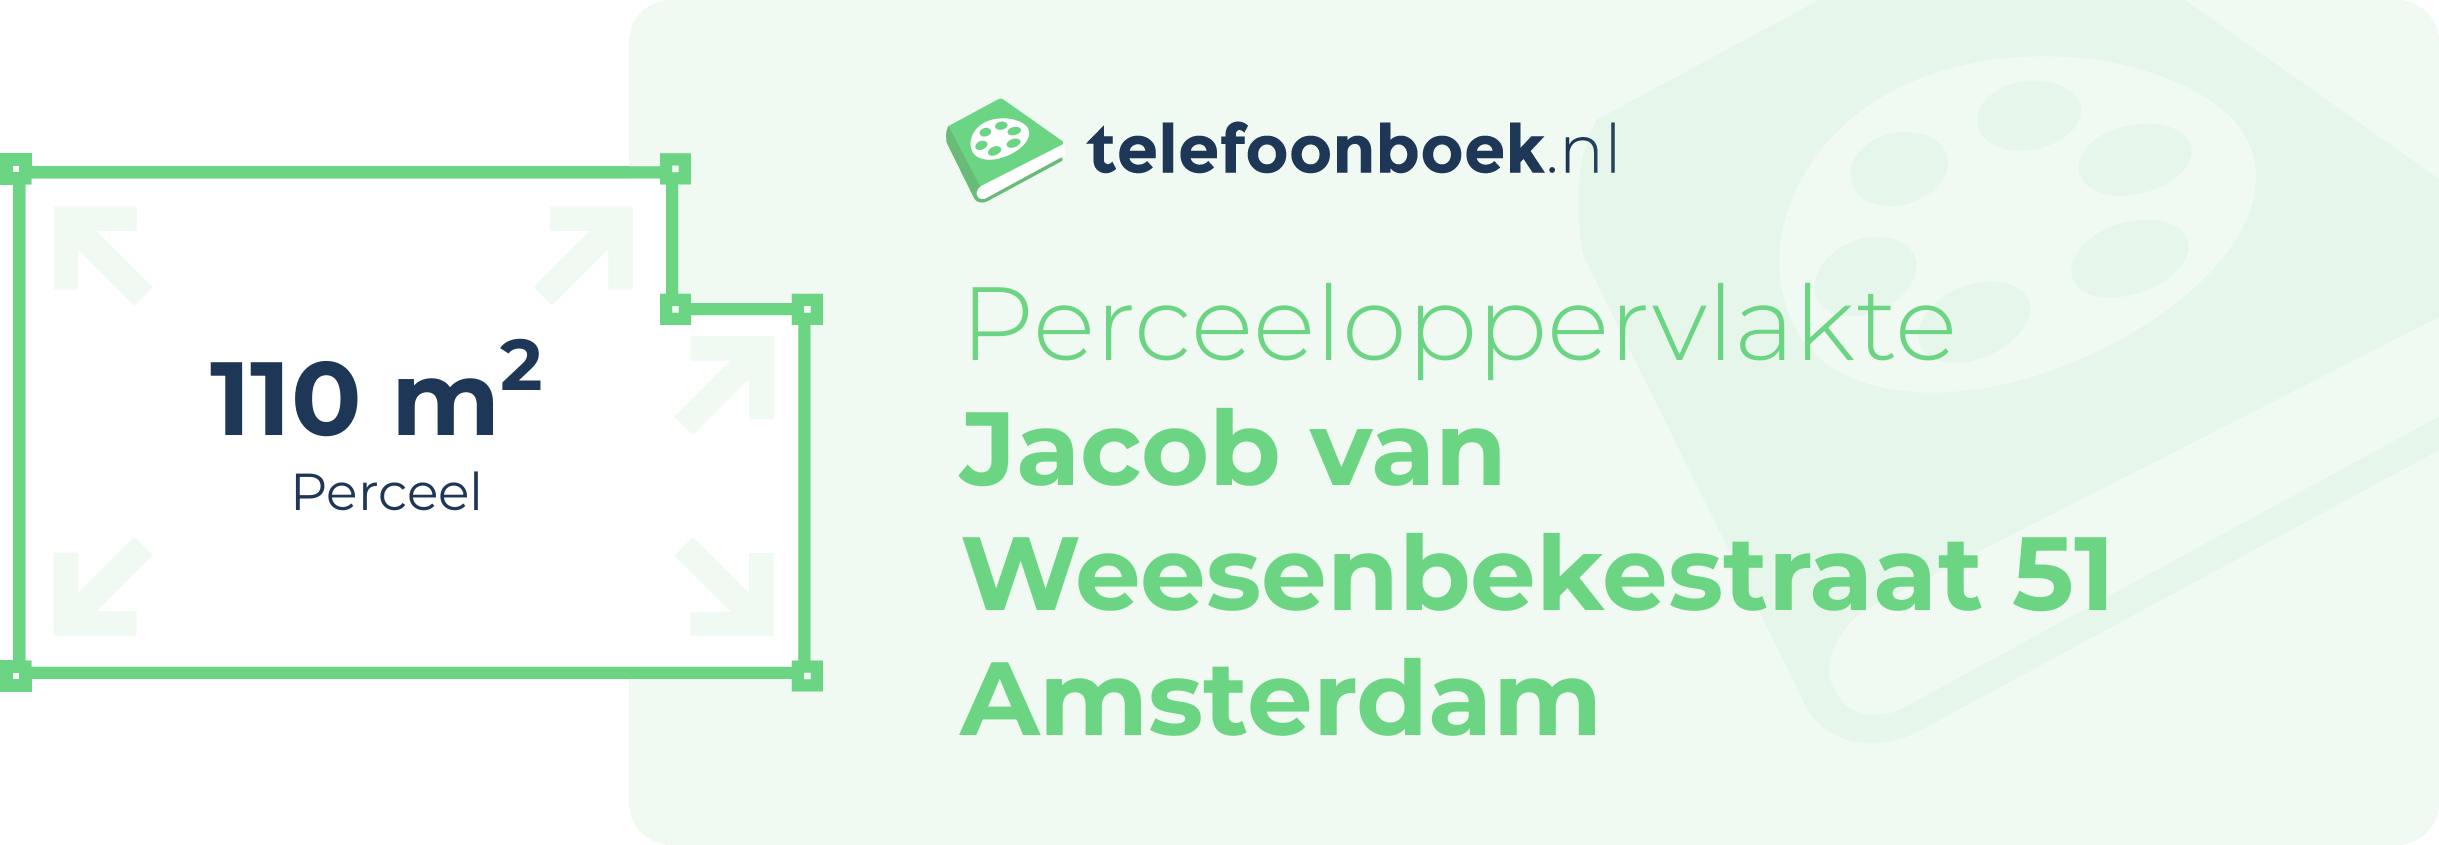 Perceeloppervlakte Jacob Van Weesenbekestraat 51 Amsterdam